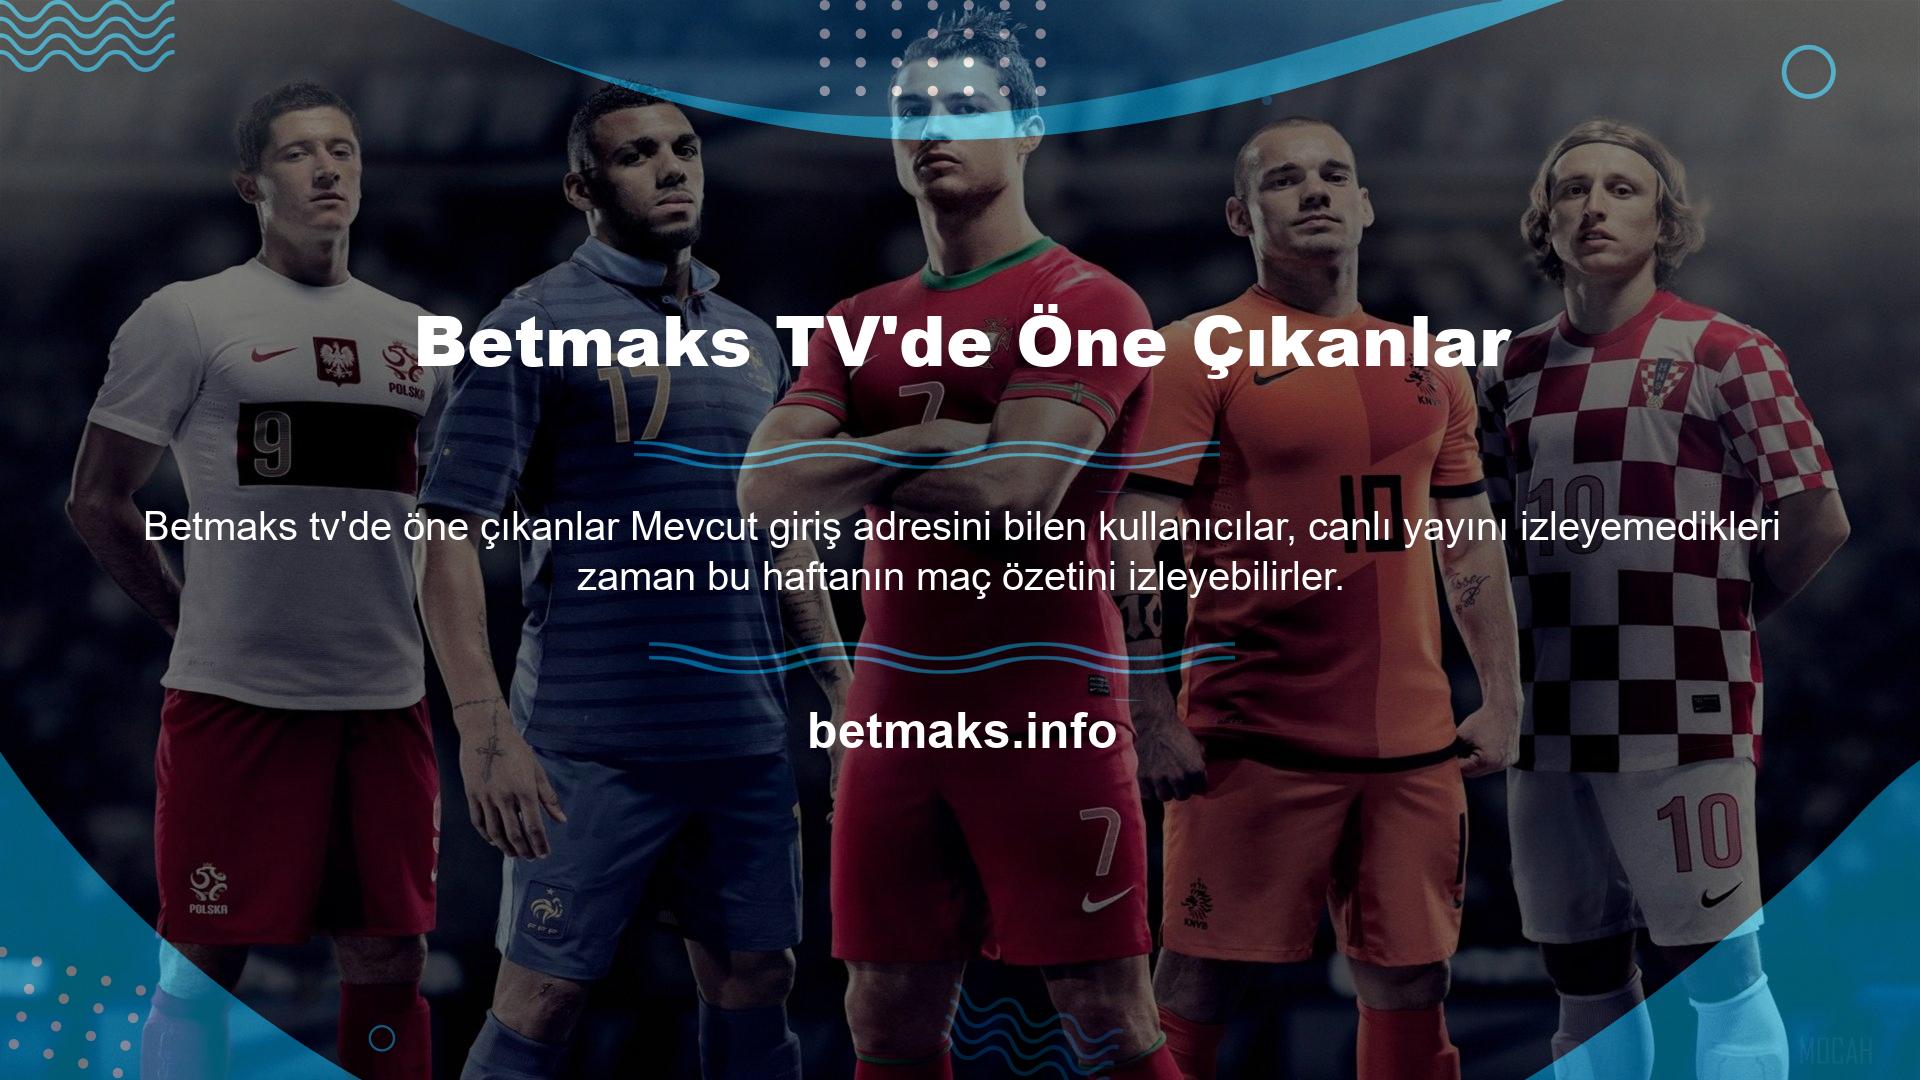 Betmaks TV Maç Özetleri bölümünü seçenler, dünyanın dört bir yanındaki büyük liglerde haftanın önemli maçlarının özetlerini izleyebilir